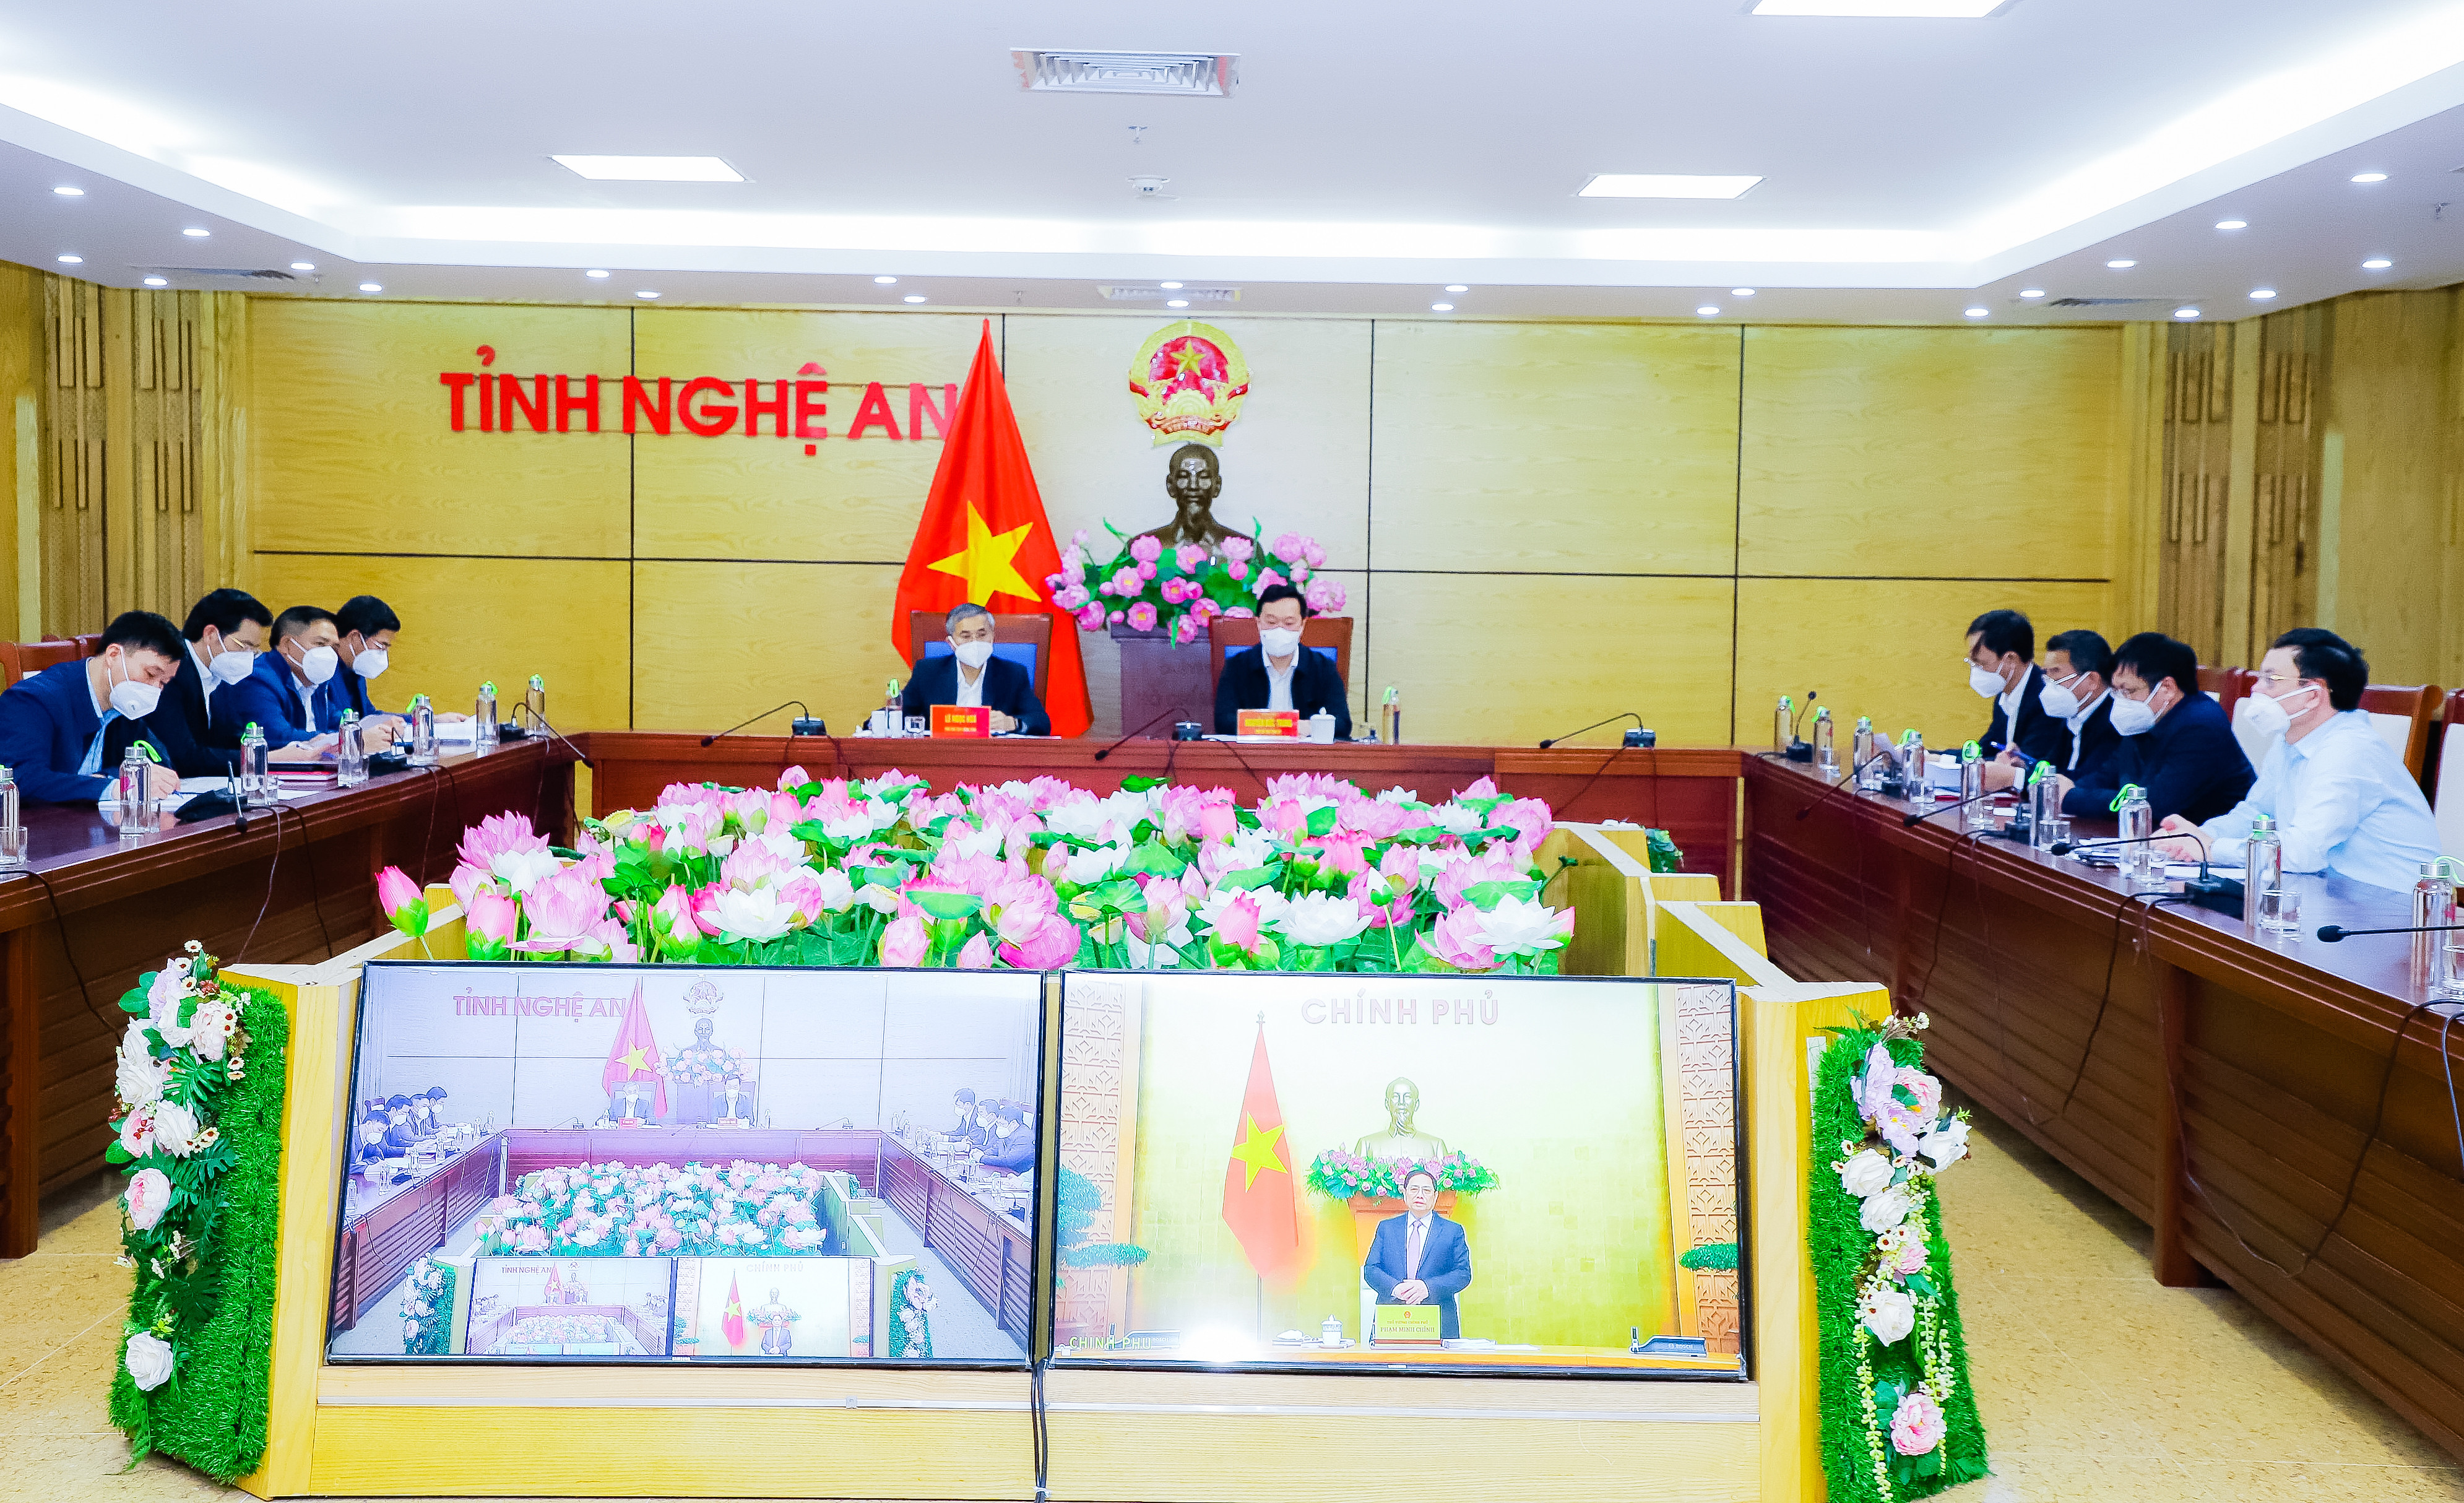 Tỉnh Nghệ An tham dự hội nghị trực tuyến với Chính phủ. Ảnh: PV